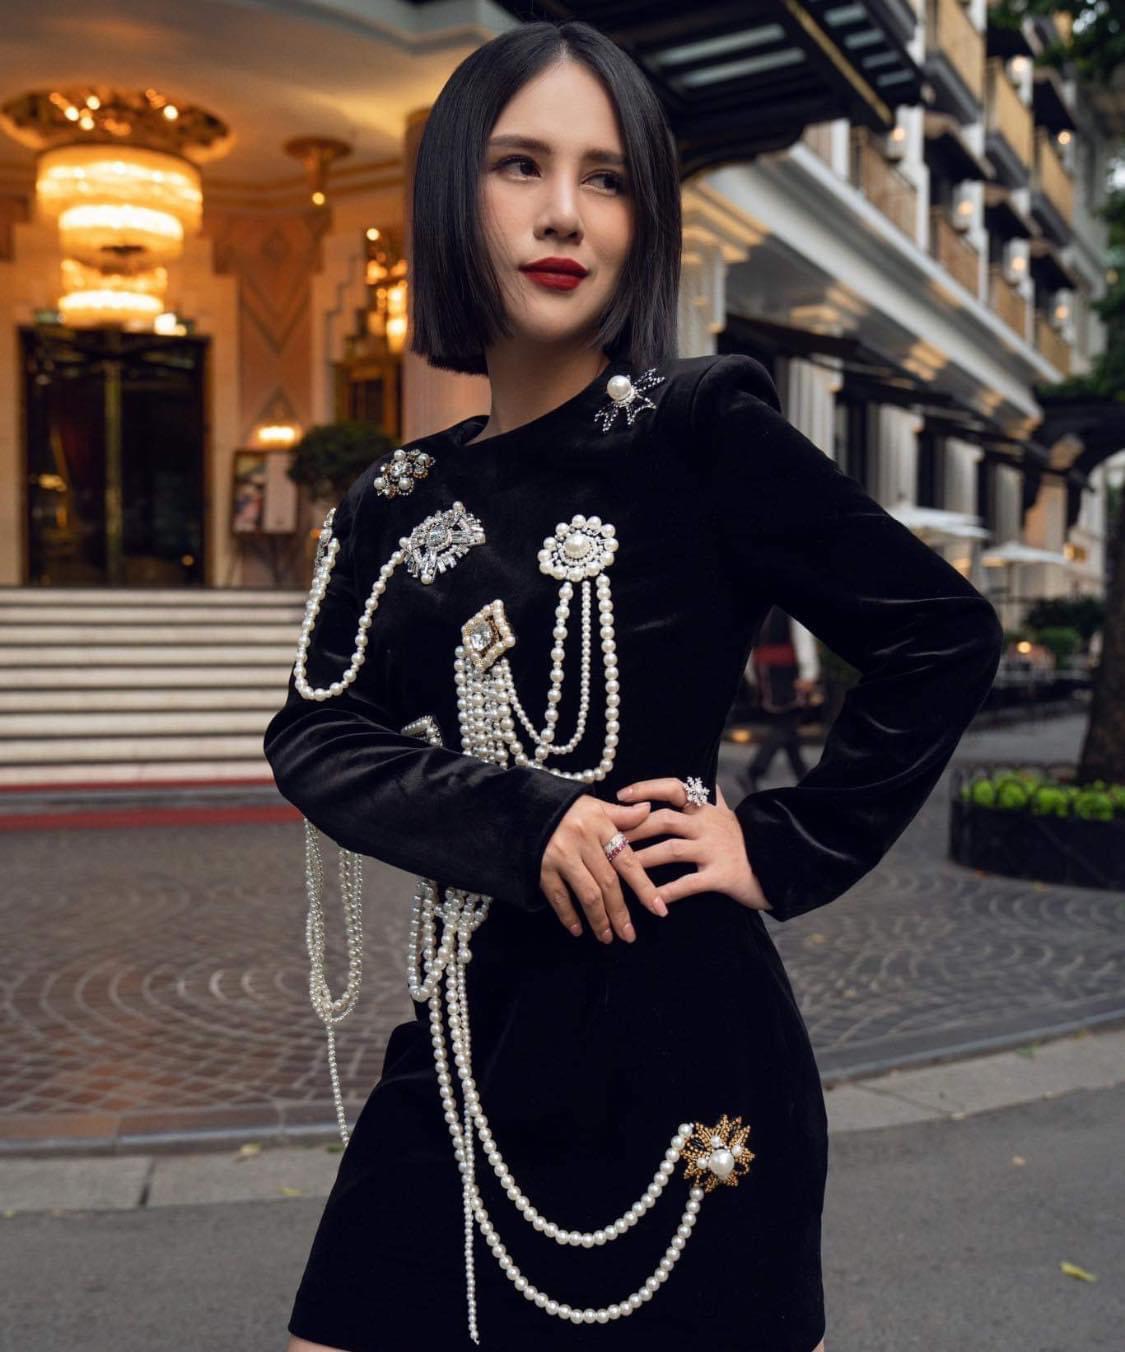 Trước đó, NTK Lê Nguyễn Nhật Linh đã từng đưa BST trang sức độc bản đến thảm đỏ Liên hoan phim Cannes lần thứ 76, là nhà thiết kế kim hoàn người Việt đầu tiên được mời trình diễn bộ sưu tập trang sức tại Tuần lễ thời trang Paris.